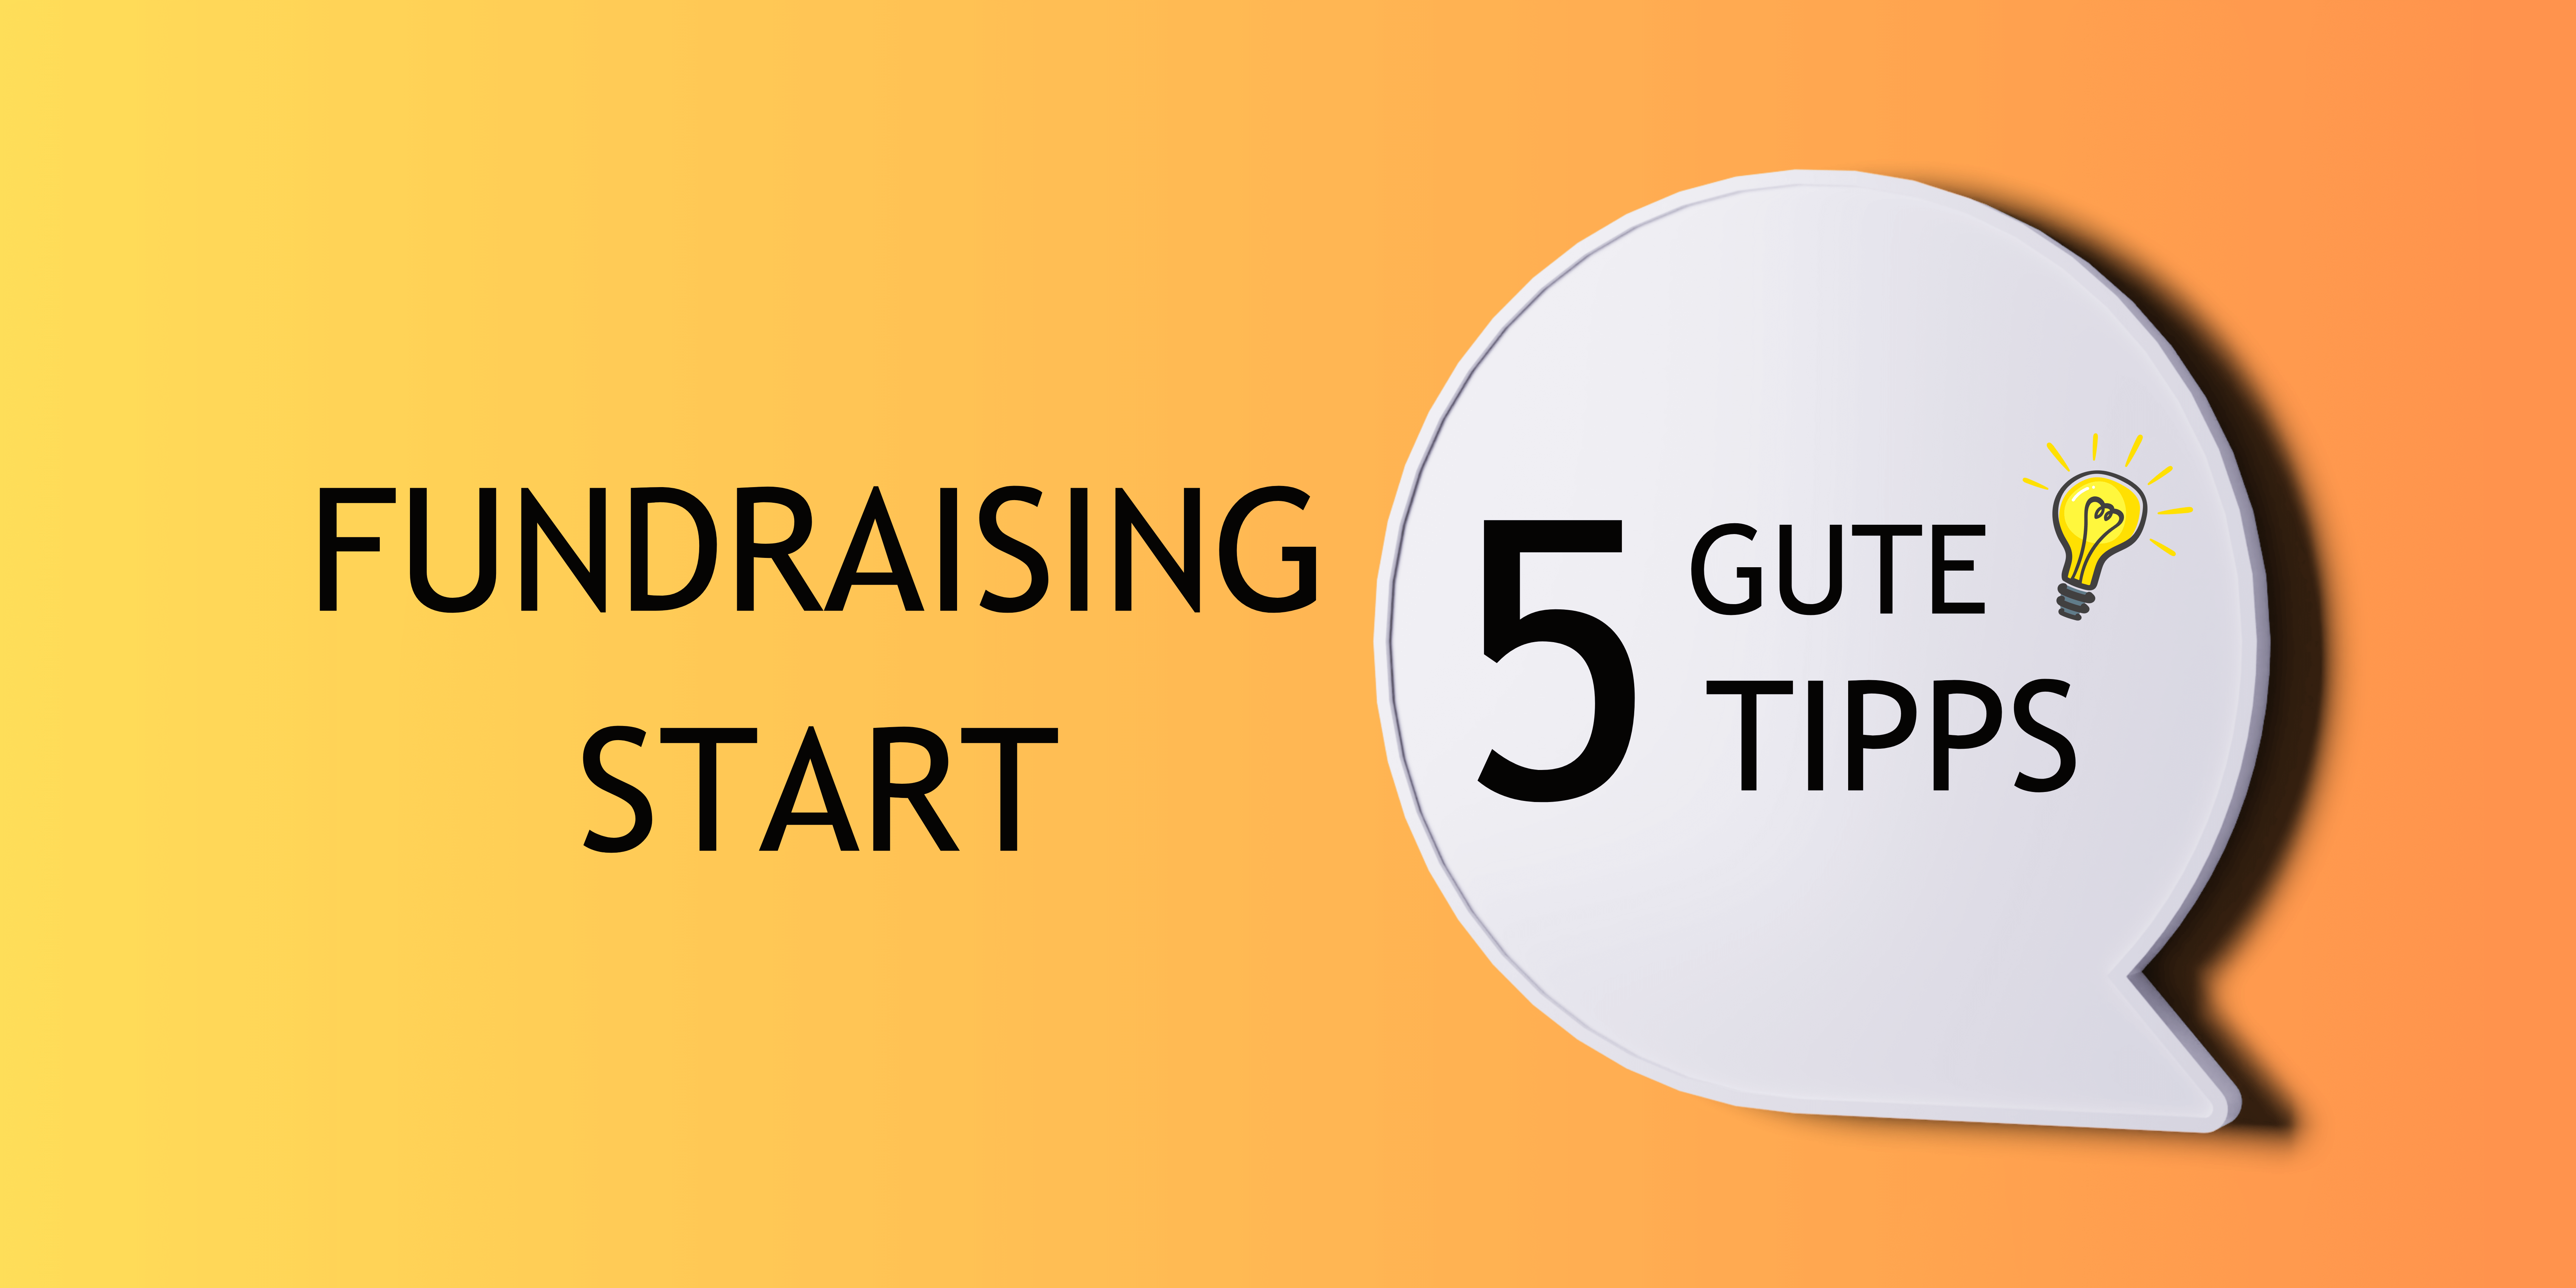 Bild mit dem Text linksstehend: Fundraising Start, rechts daneben in einem Kreis steht geschrieben,: 5 Gute Tipps, mit dem Symbol einer Glühbirne